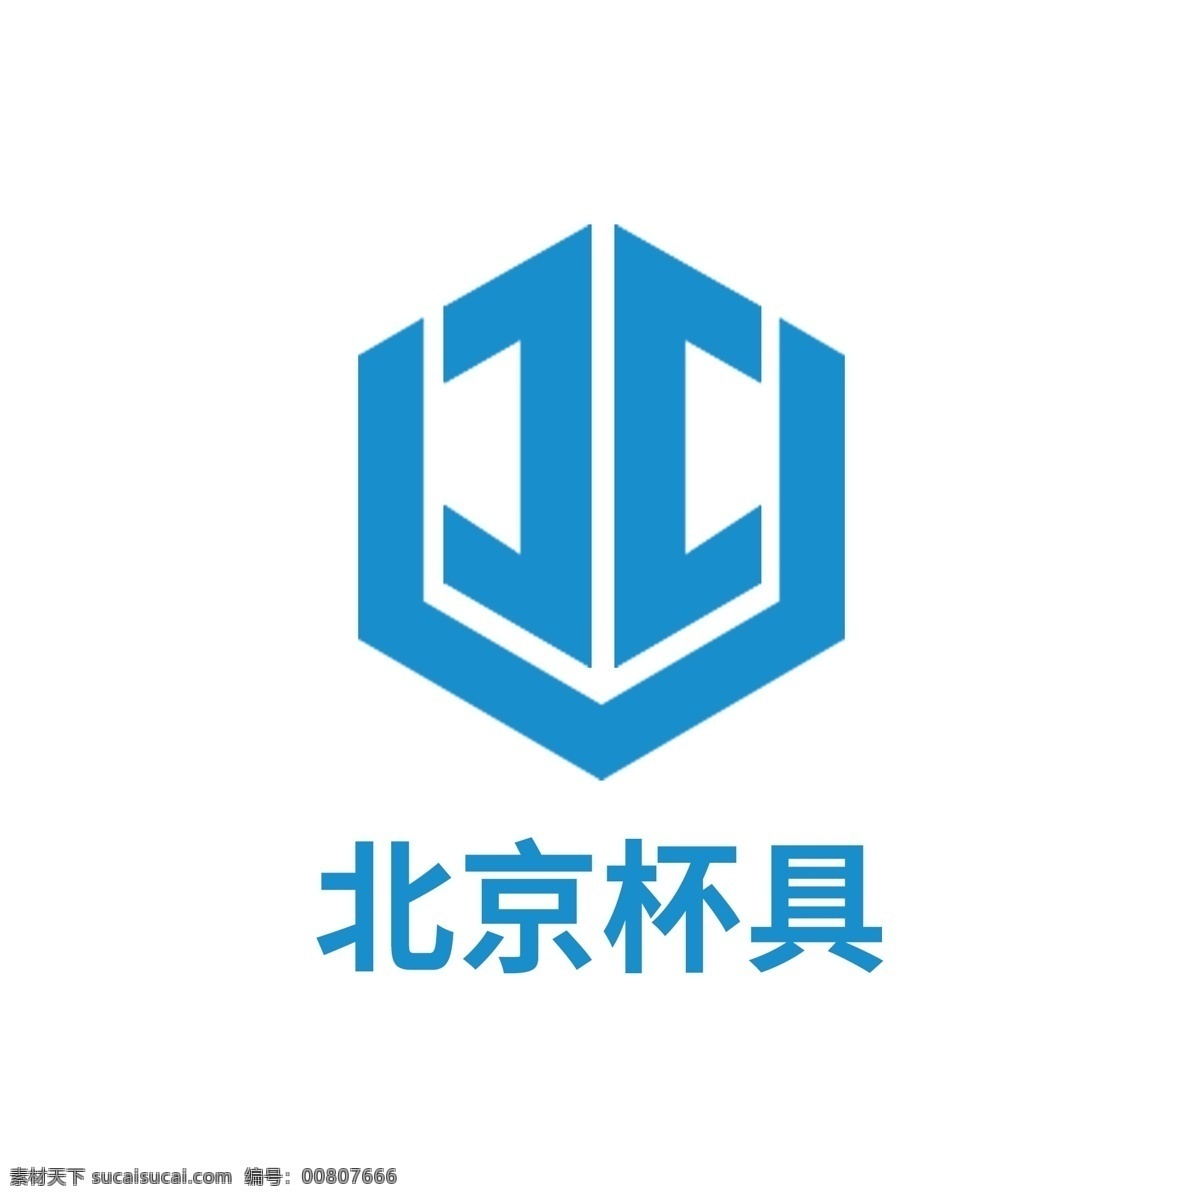 北京 杯 具 制造 有限公司 logo 六边形 蓝色 商标 模板 原创